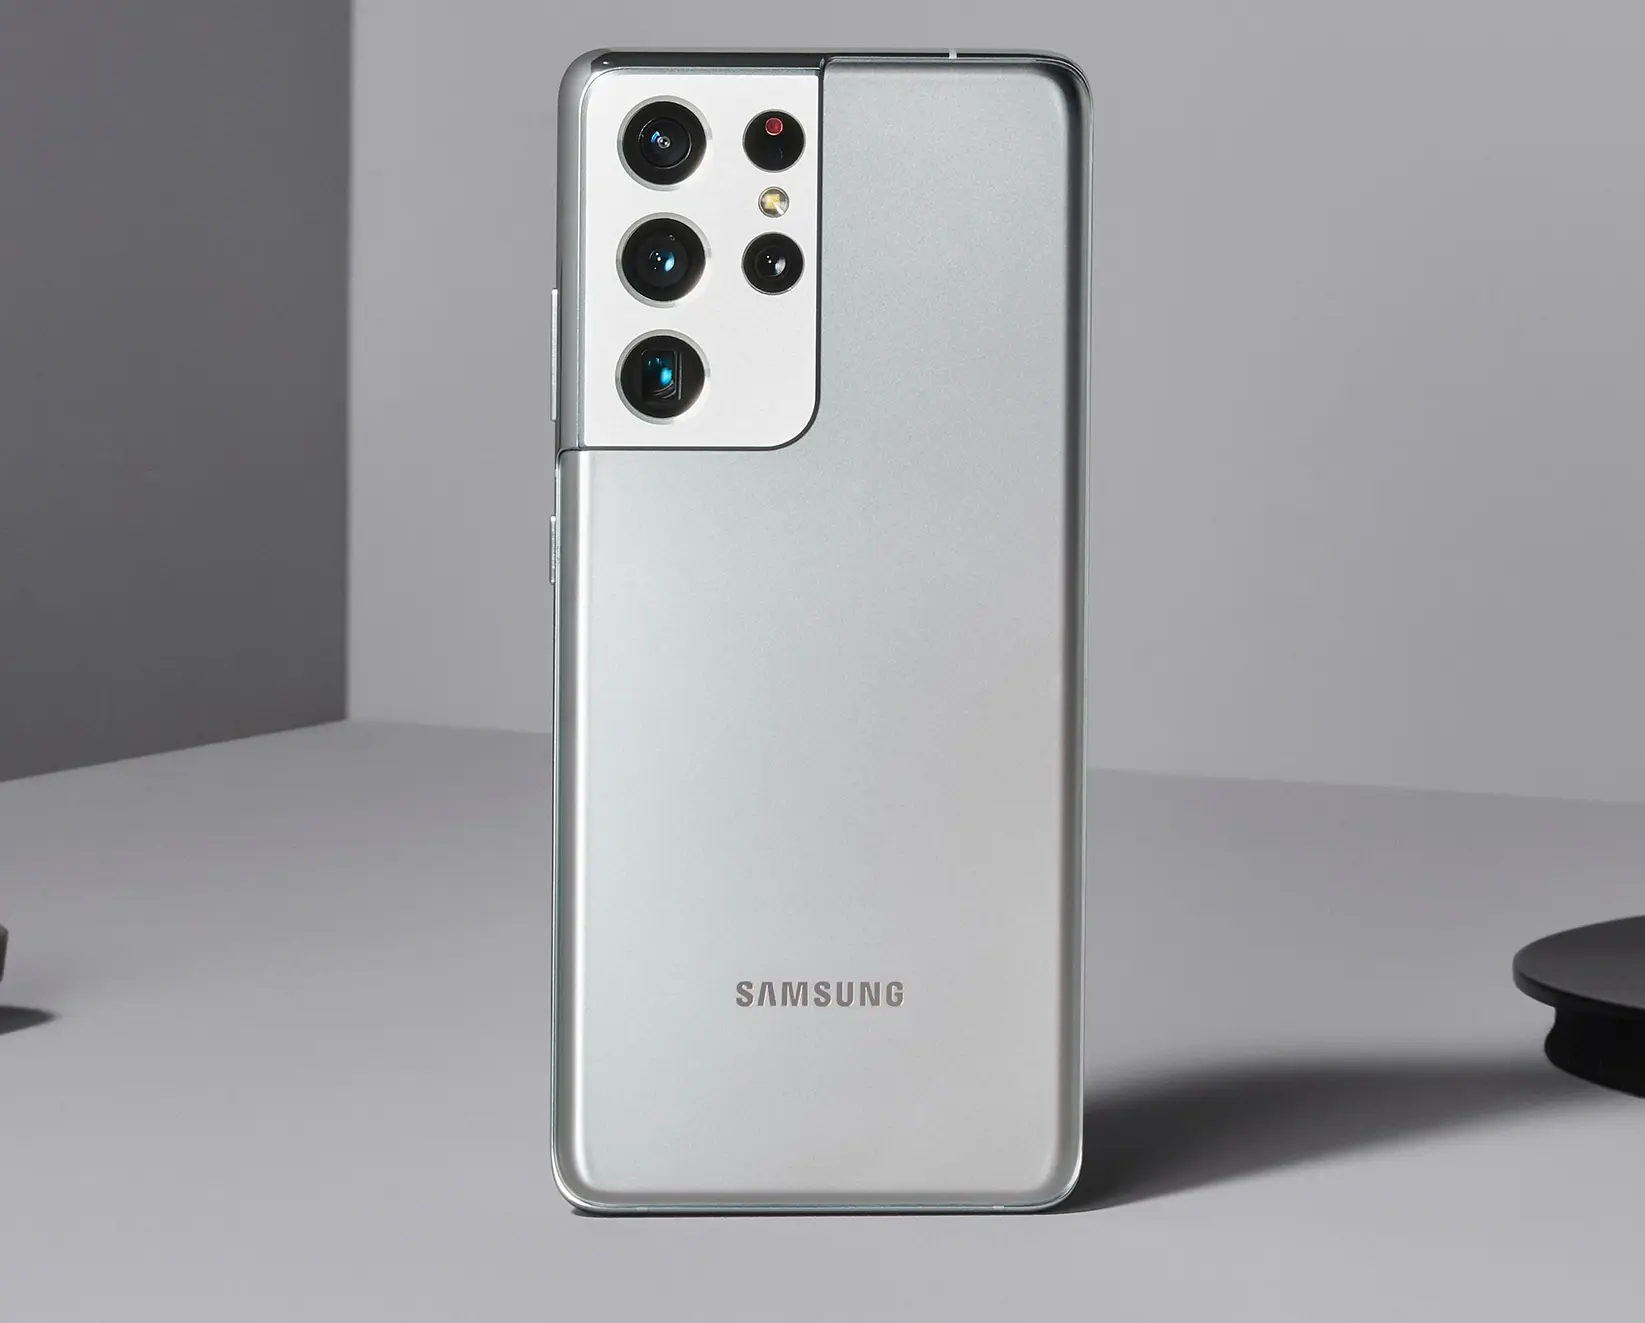 Los teléfonos Samsung recibirán cuatro años de actualizaciones importantes